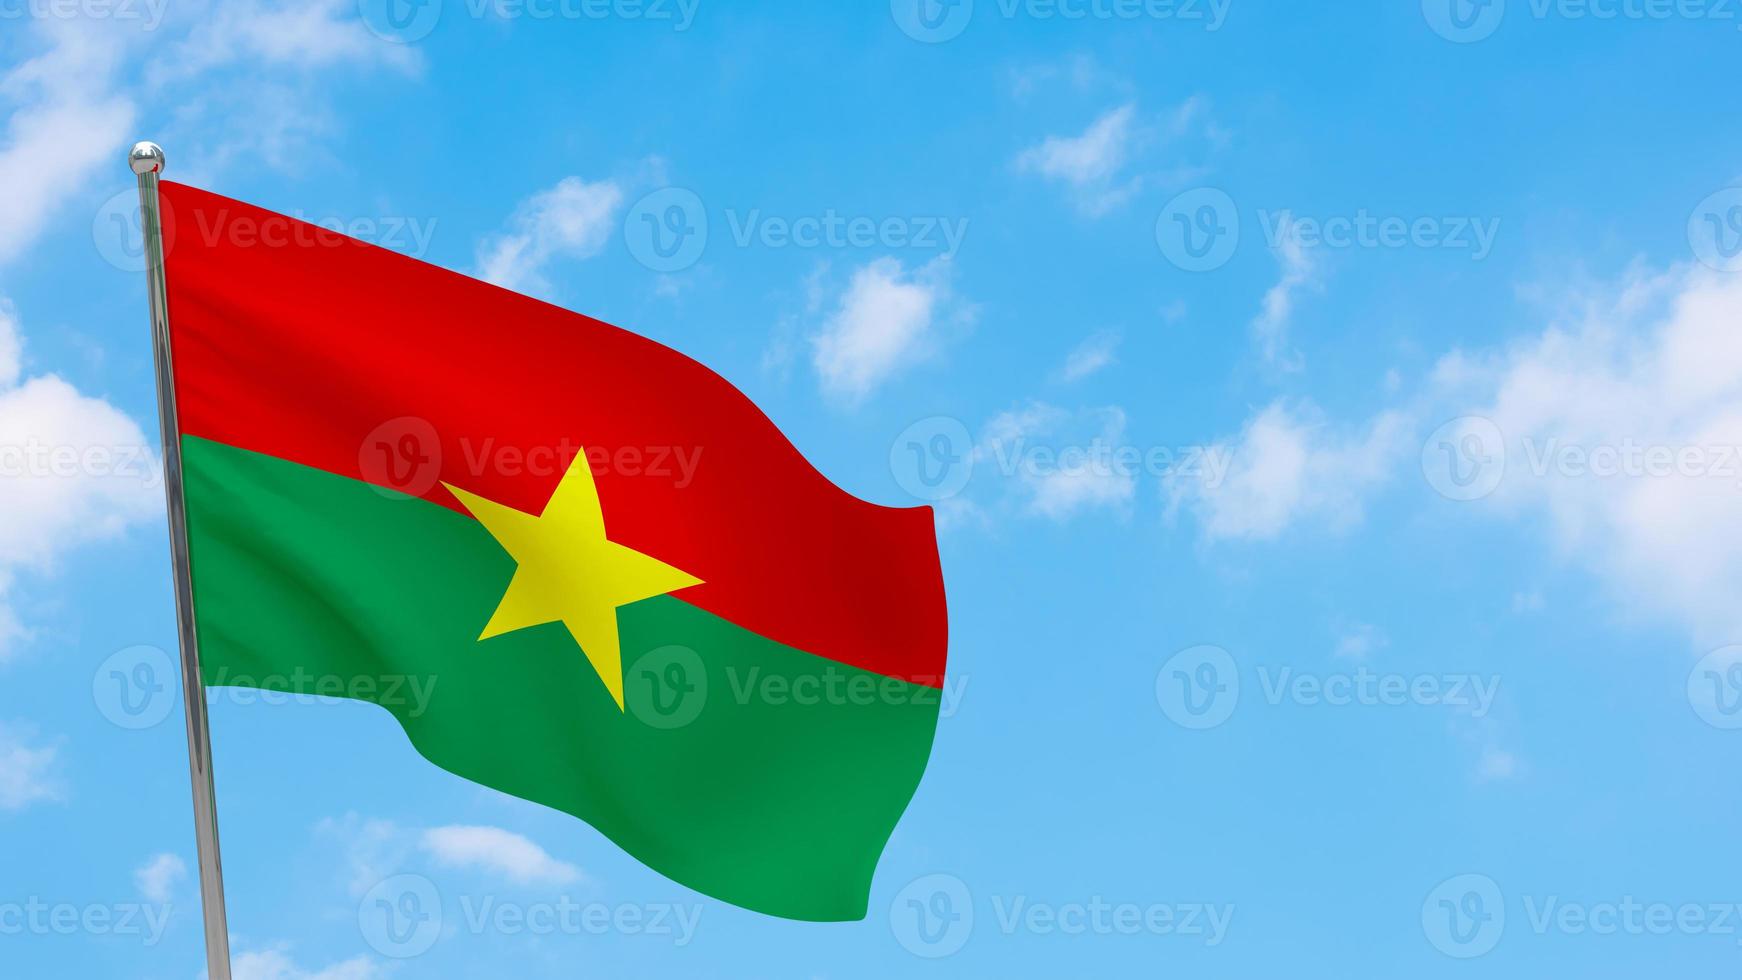 Burkina Faso flag on pole photo